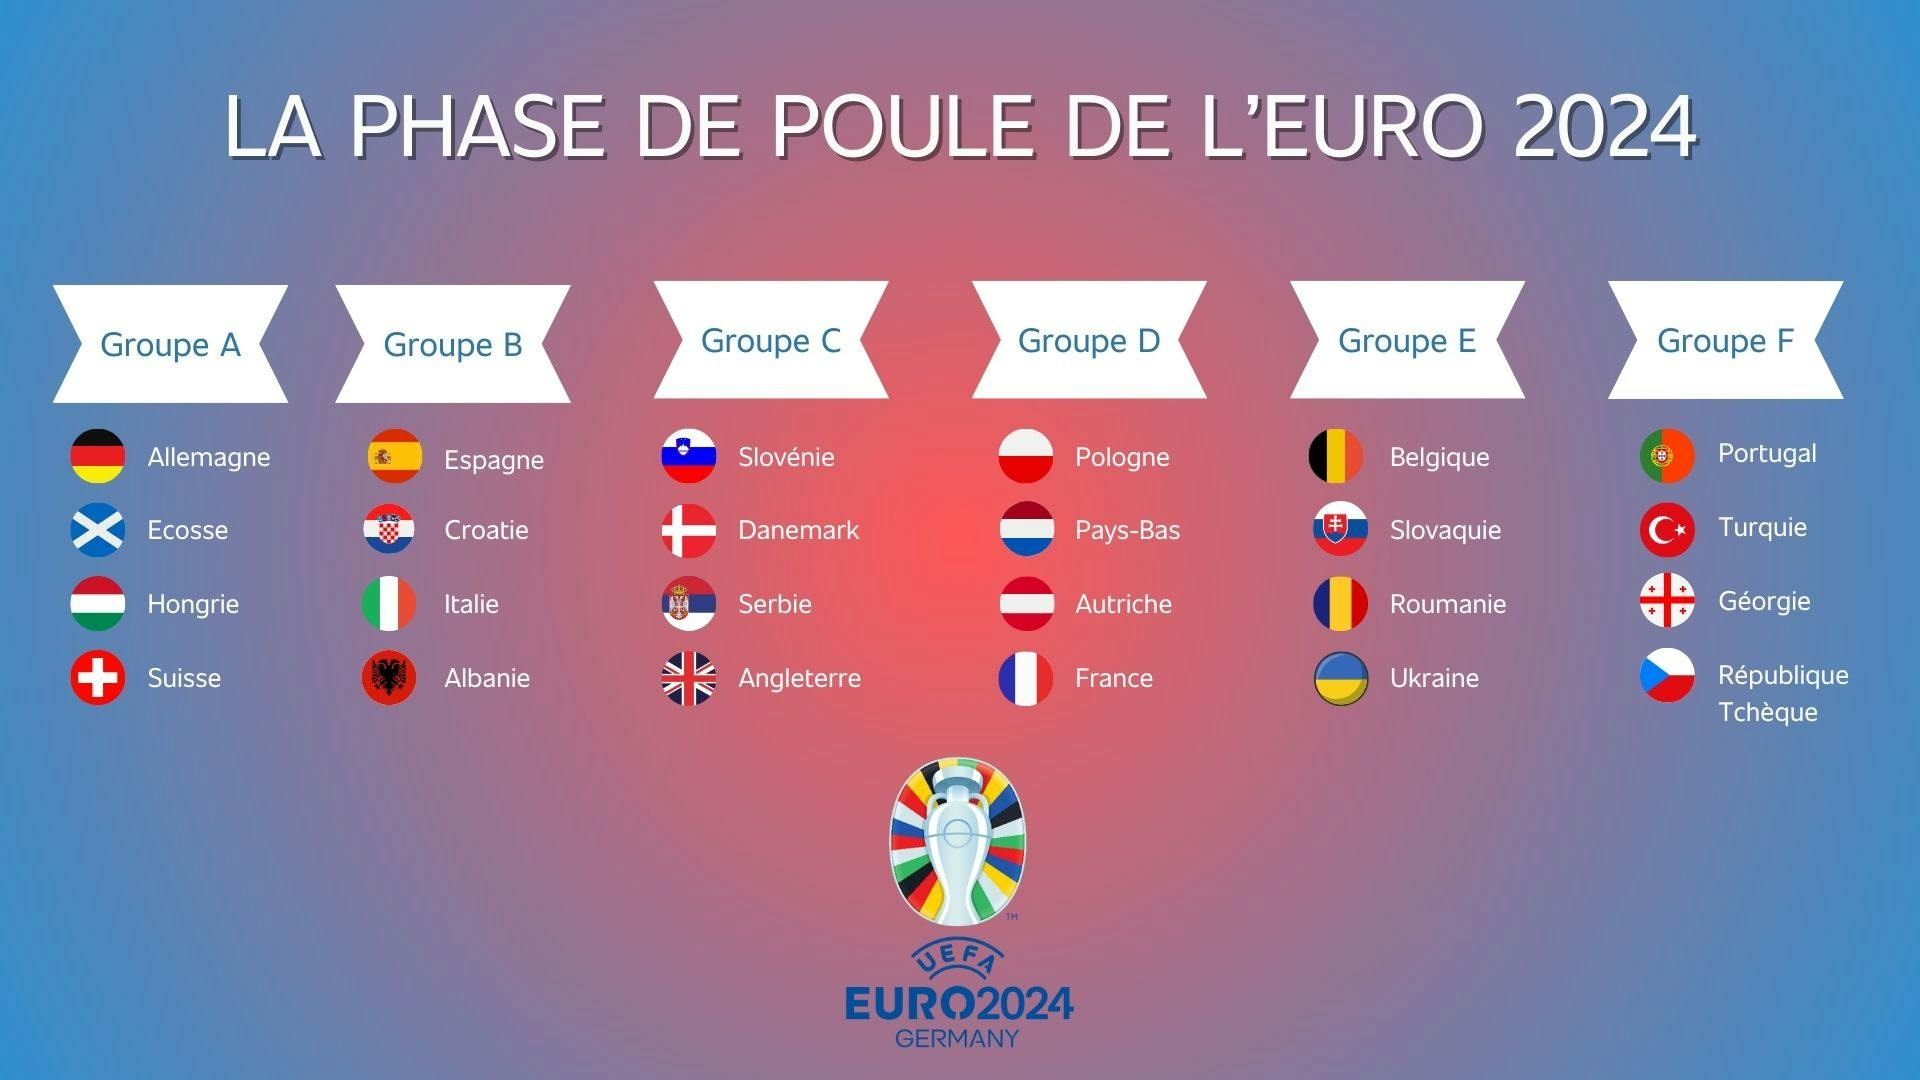 image avec les drapeaux et noms des pays participant à l’Euro 2024 répartis en 6 groupes